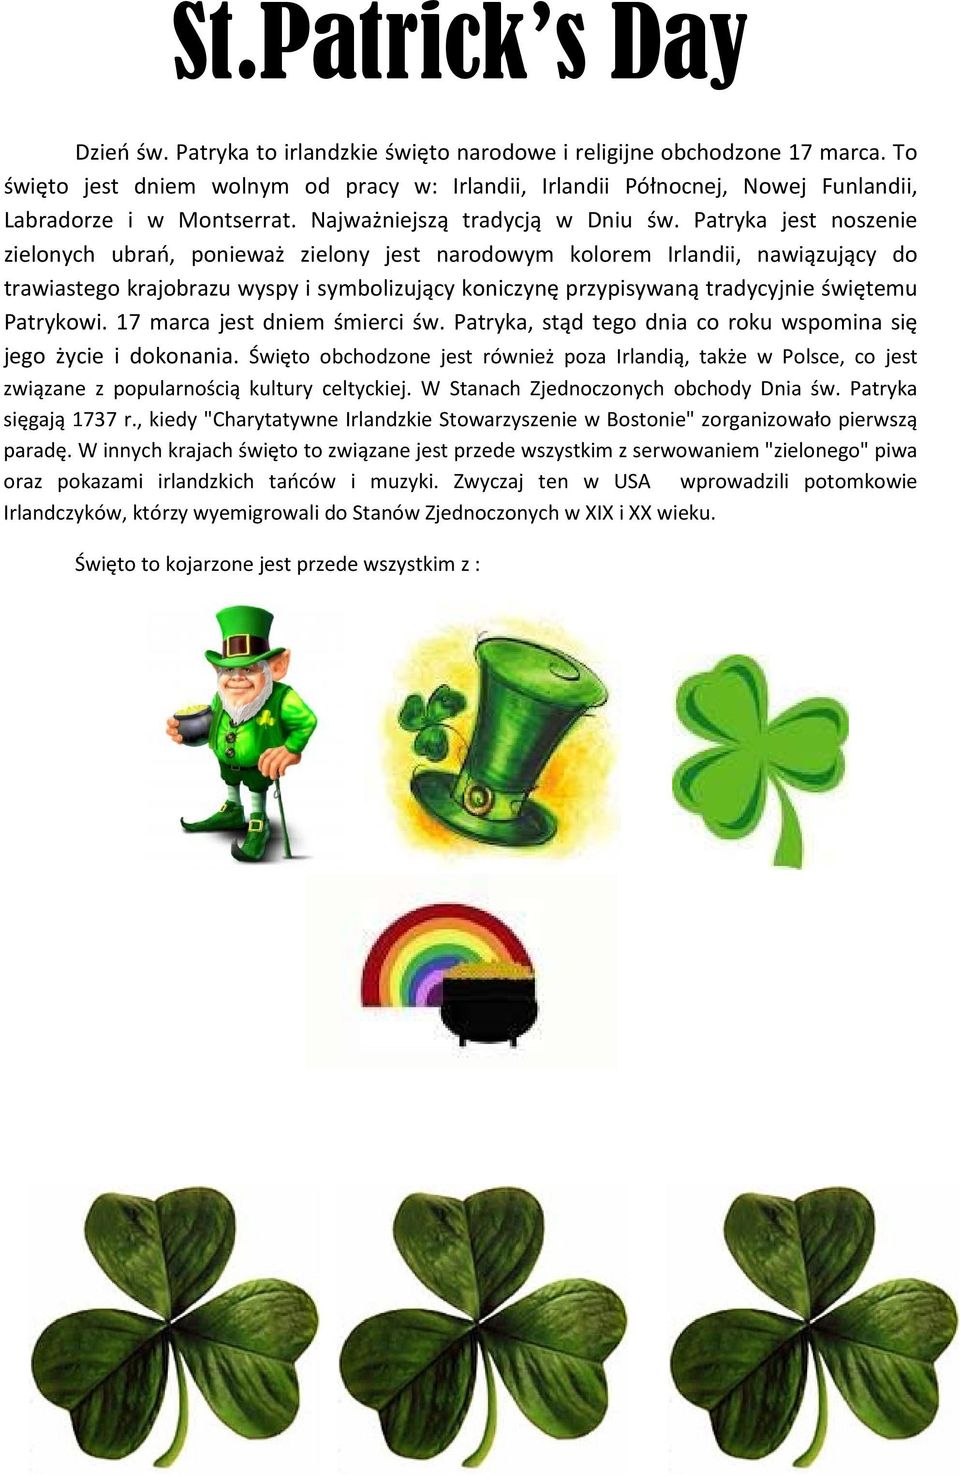 Patryka jest noszenie zielonych ubrań, ponieważ zielony jest narodowym kolorem Irlandii, nawiązujący do trawiastego krajobrazu wyspy i symbolizujący koniczynę przypisywaną tradycyjnie świętemu